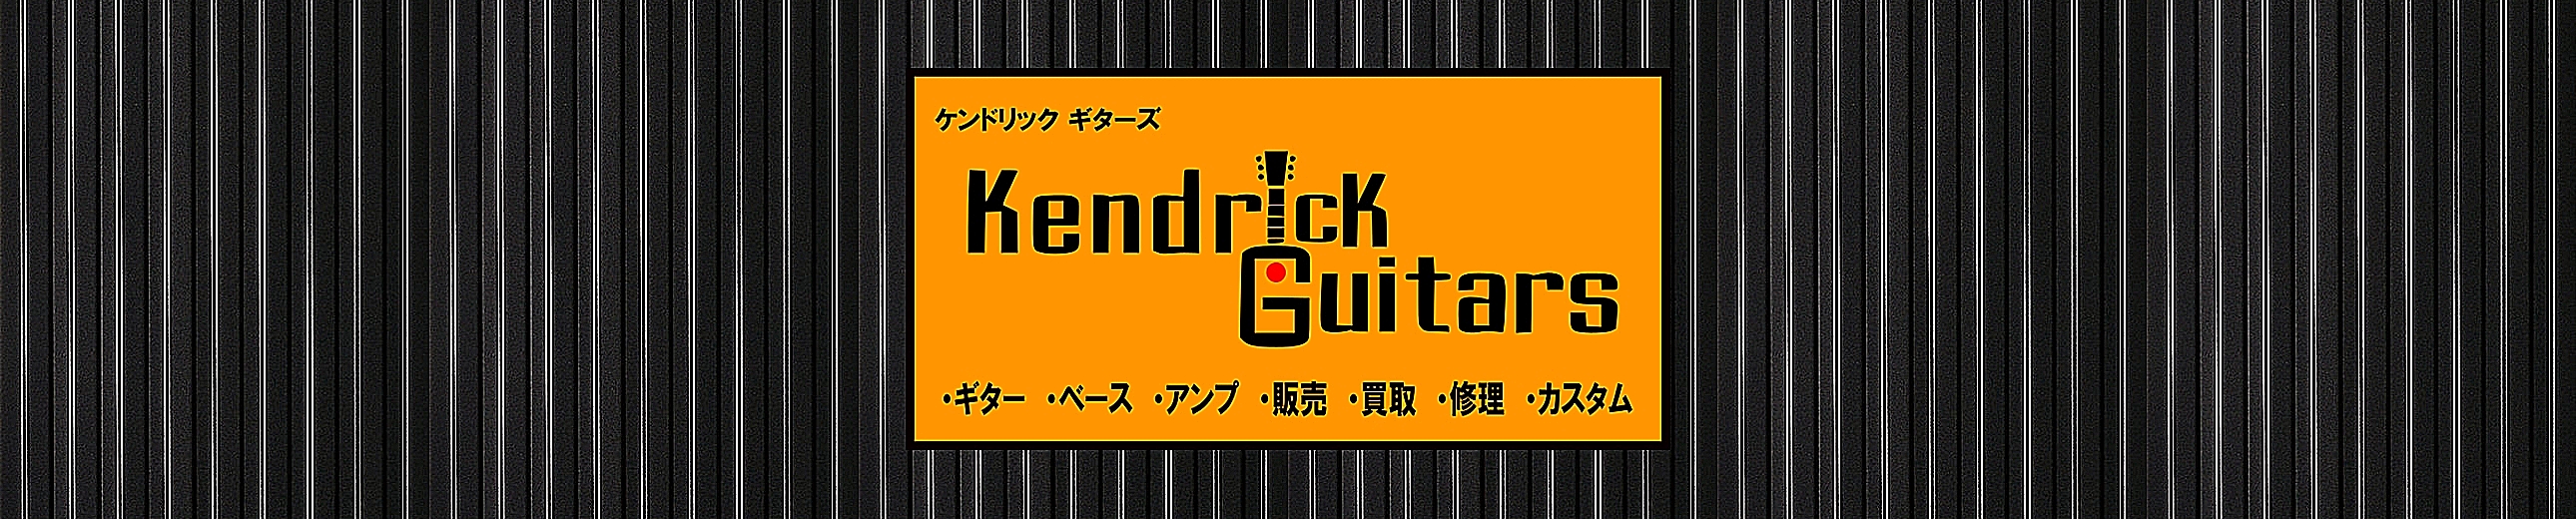 Kendrick Guitars ヘッダー画像